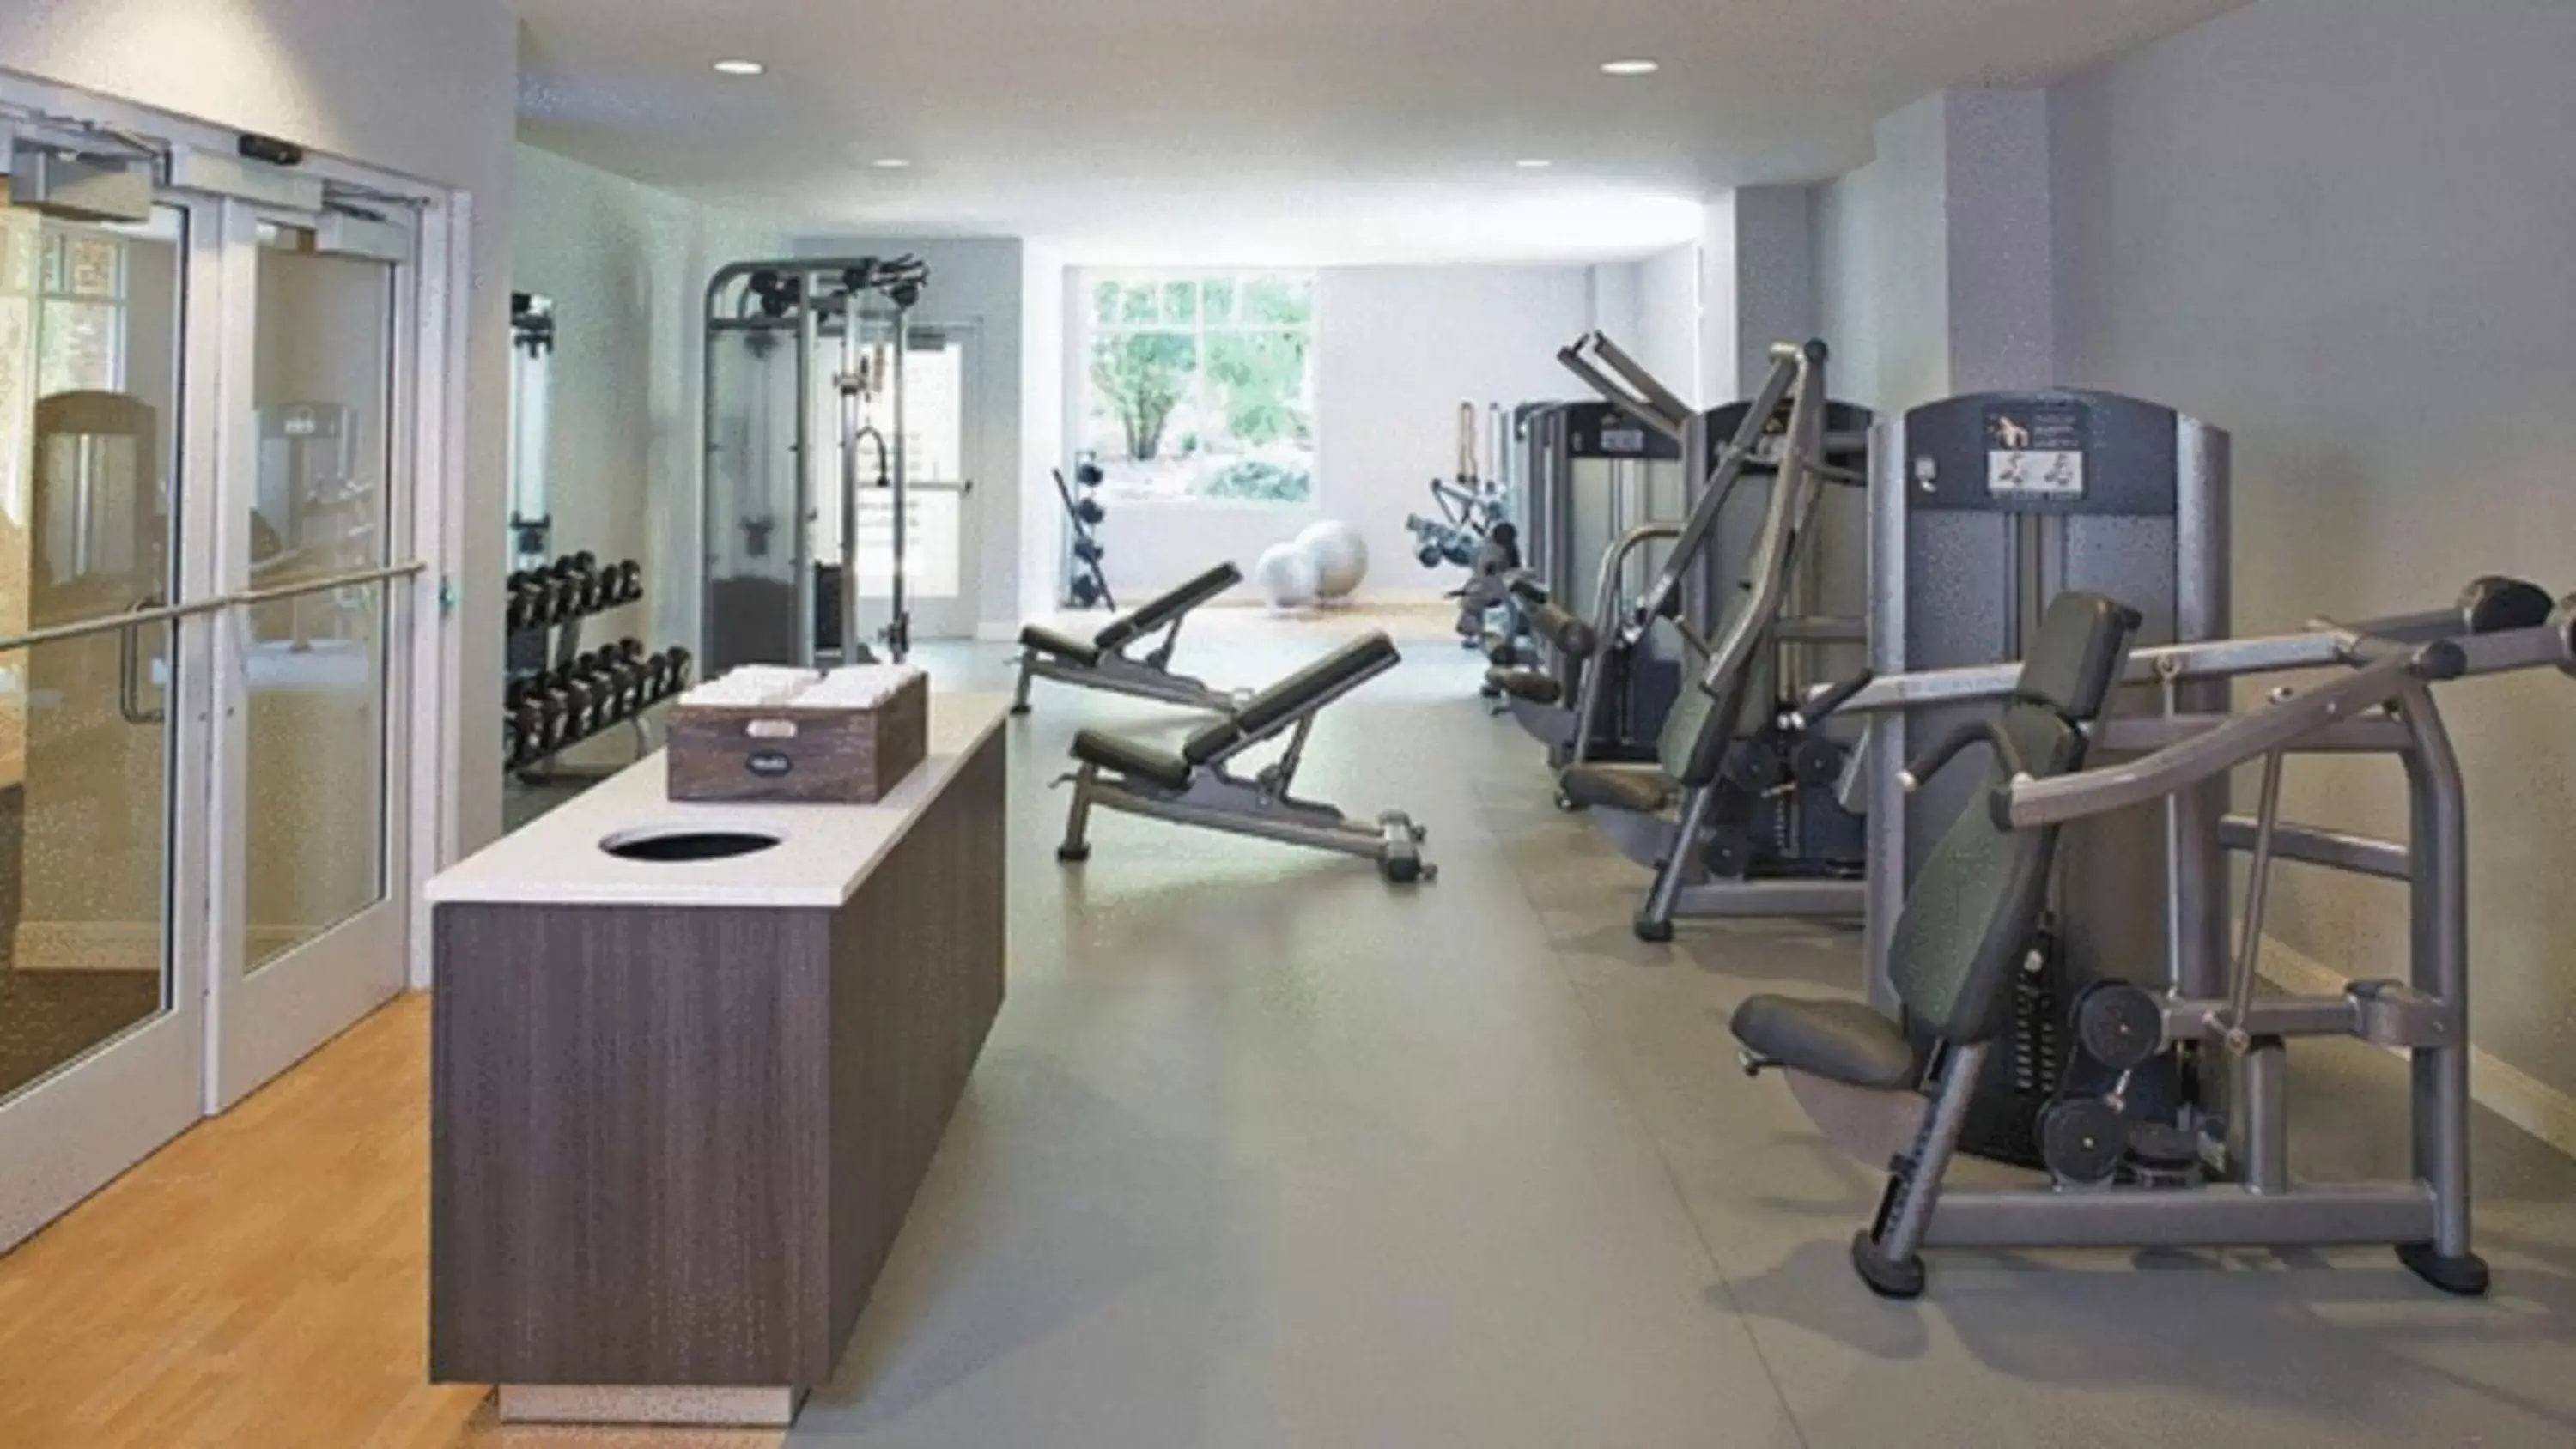 Fitness centre/facilities, Fitness Center/Facilities in Hyatt Regency Atlanta Perimeter at Villa Christina